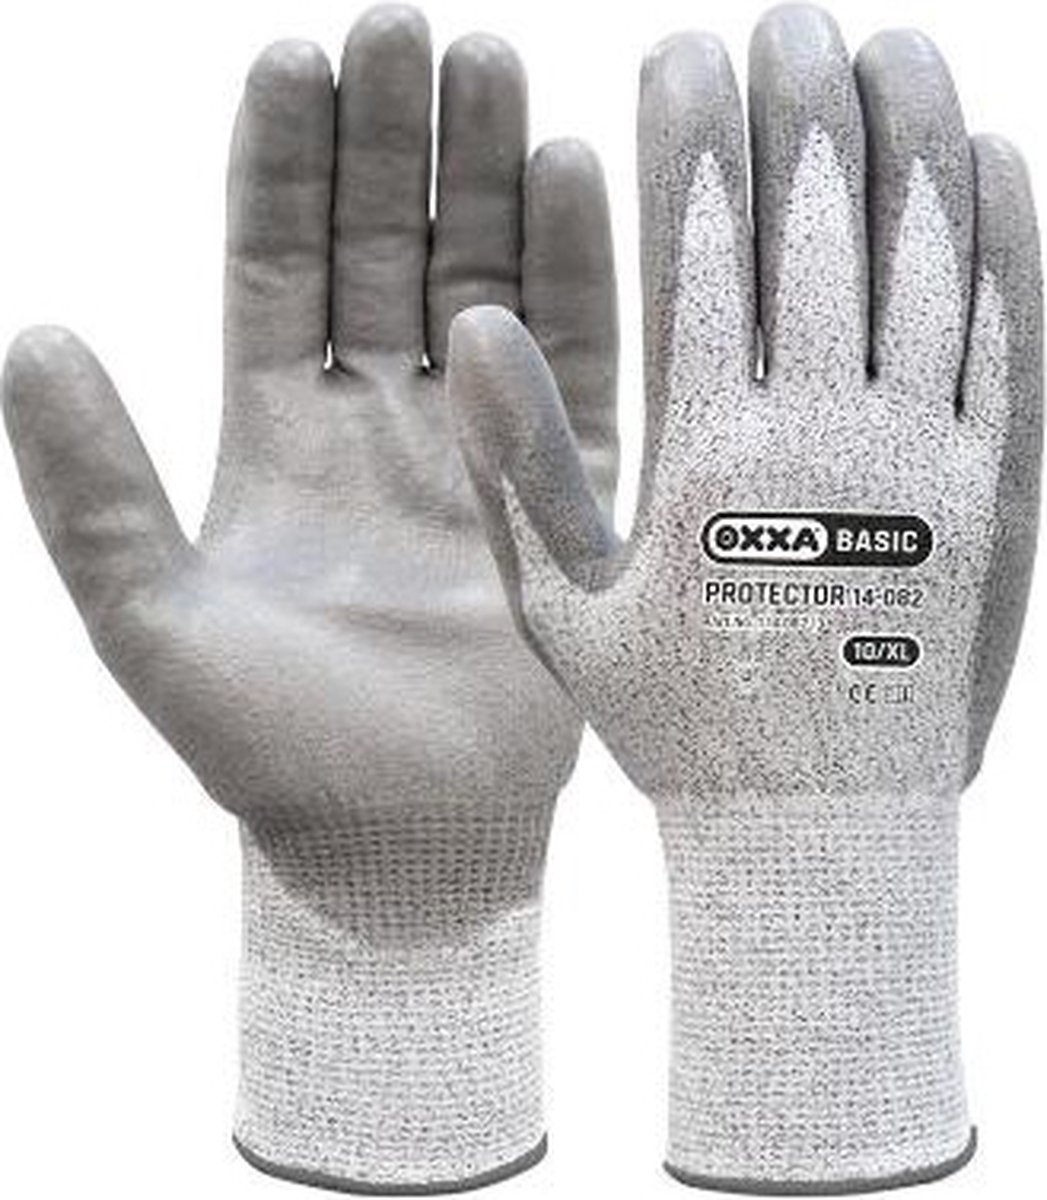 OXXA Protector 14-082 handschoen (12 paar) S/7 Oxxa - Grijs - PU/Nylon - Gebreid manchet - EN 388:2016